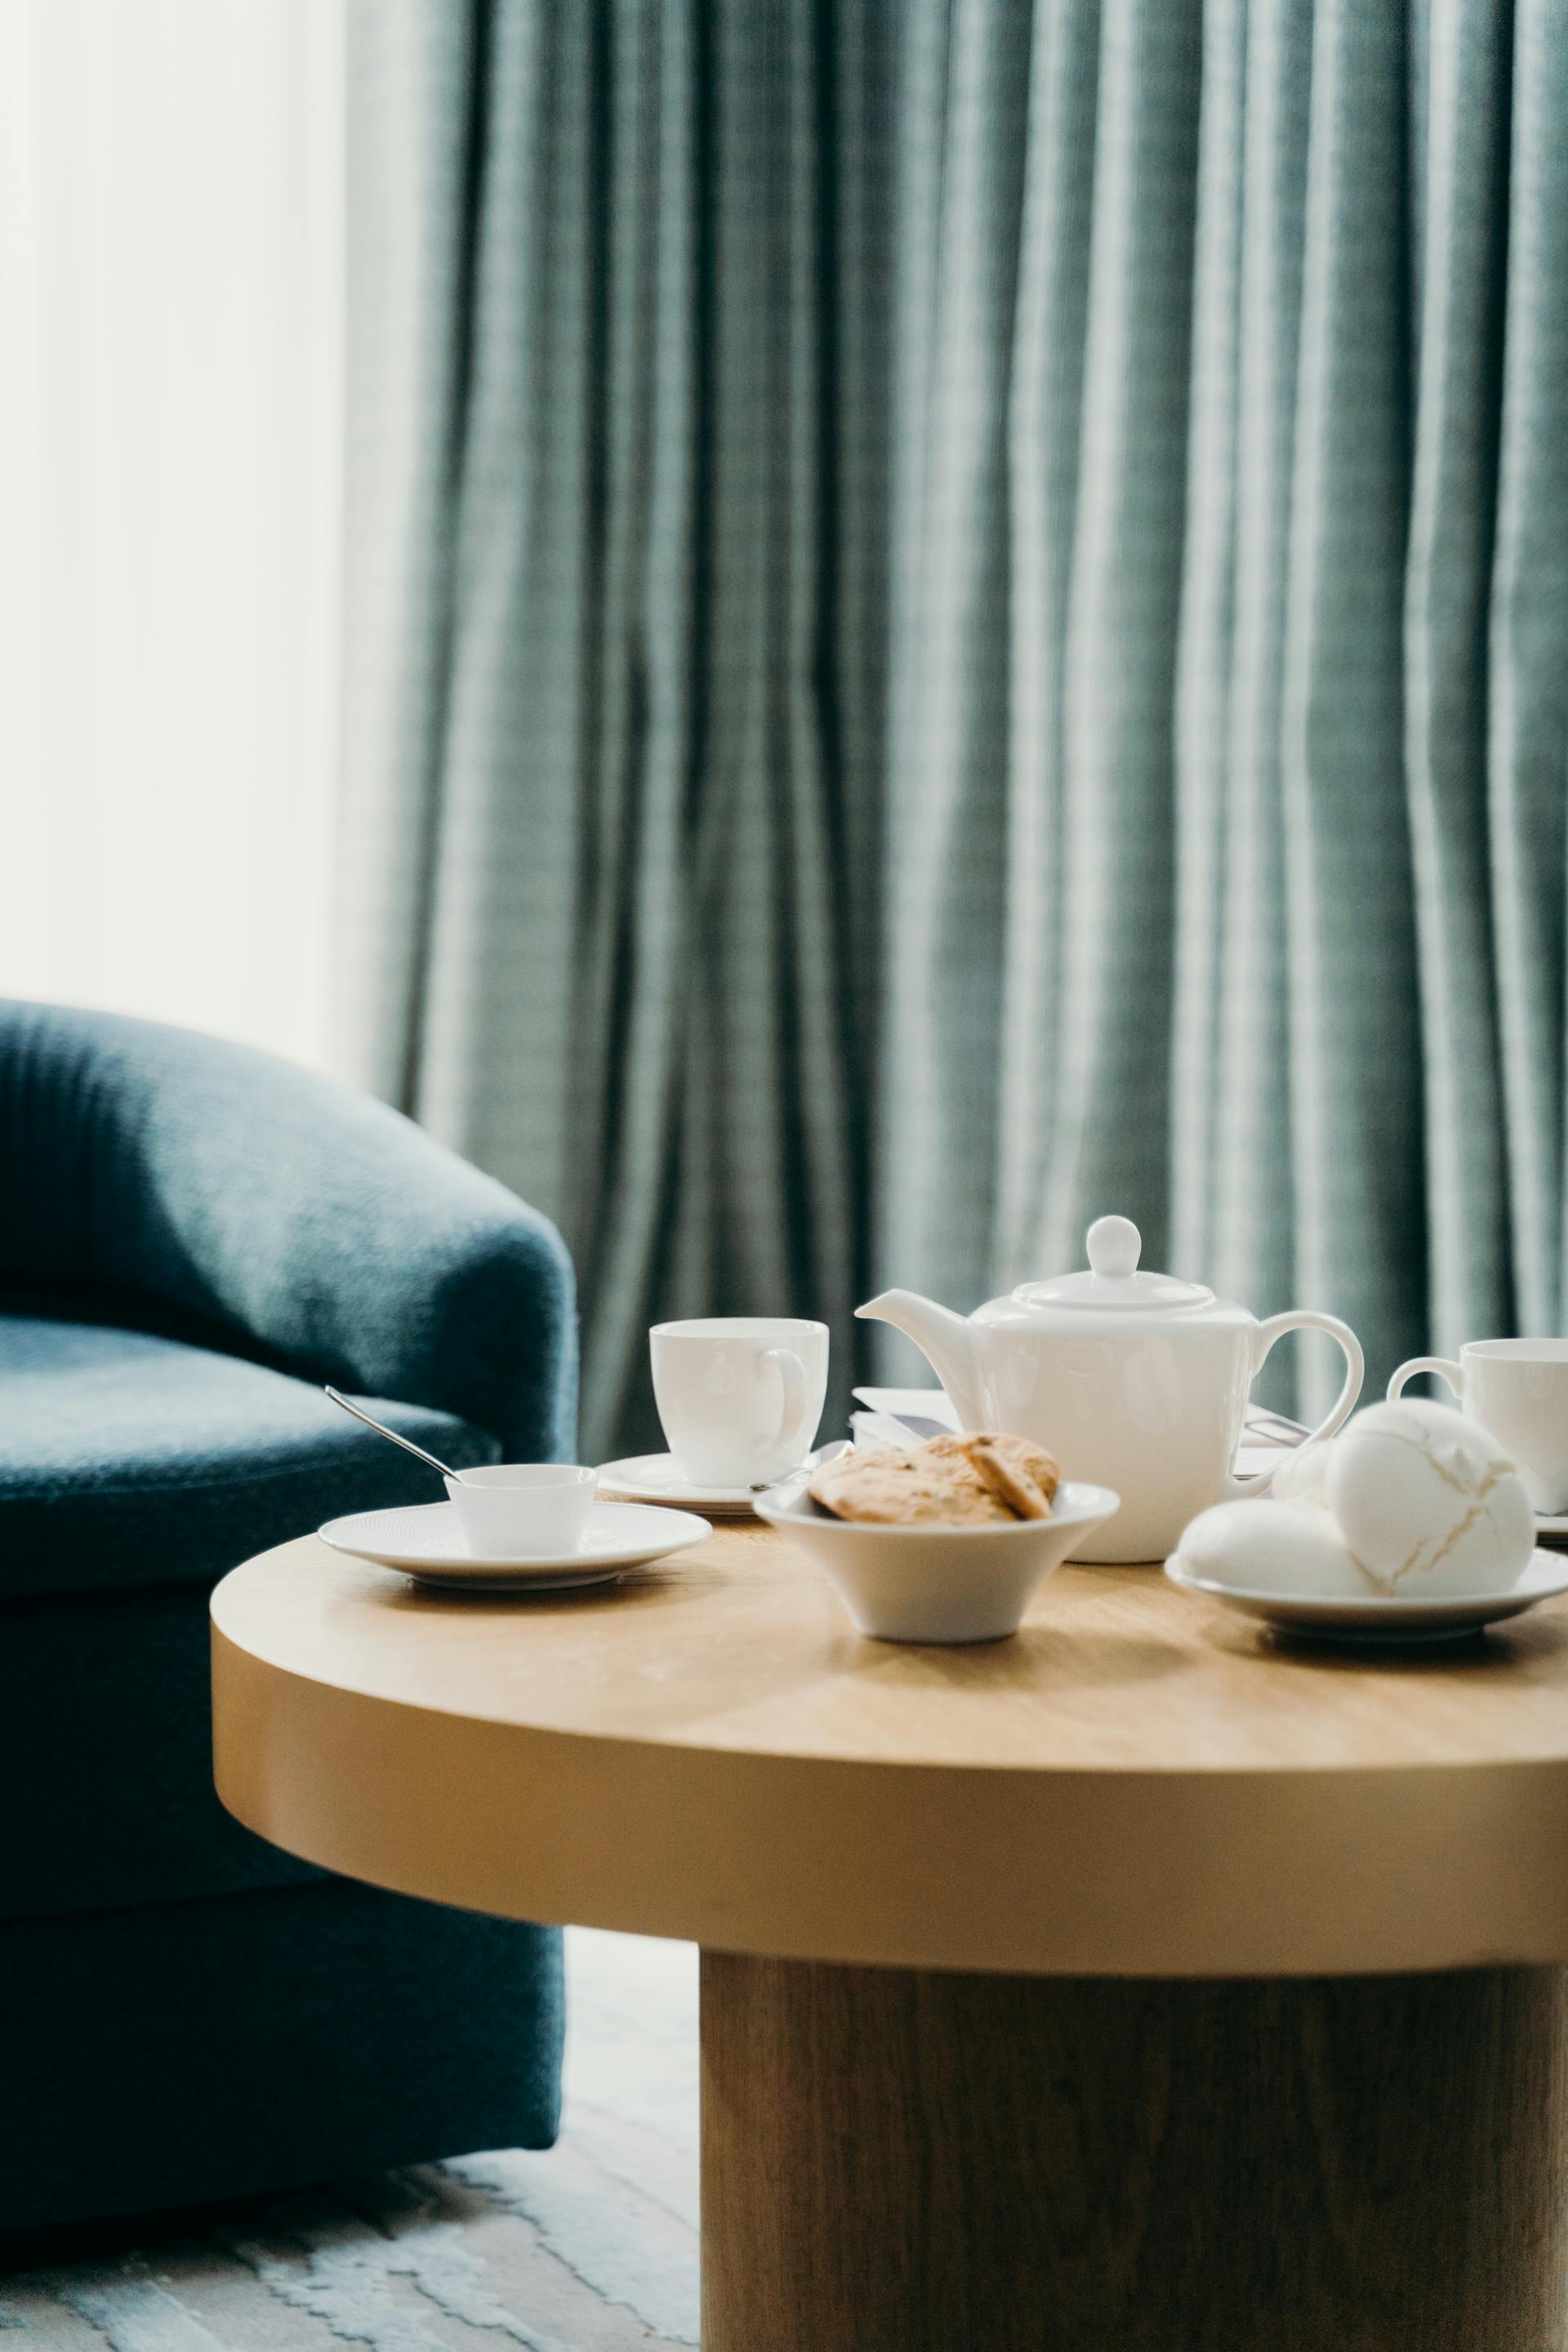 Tasses de thé sur une table | Source : Pexels